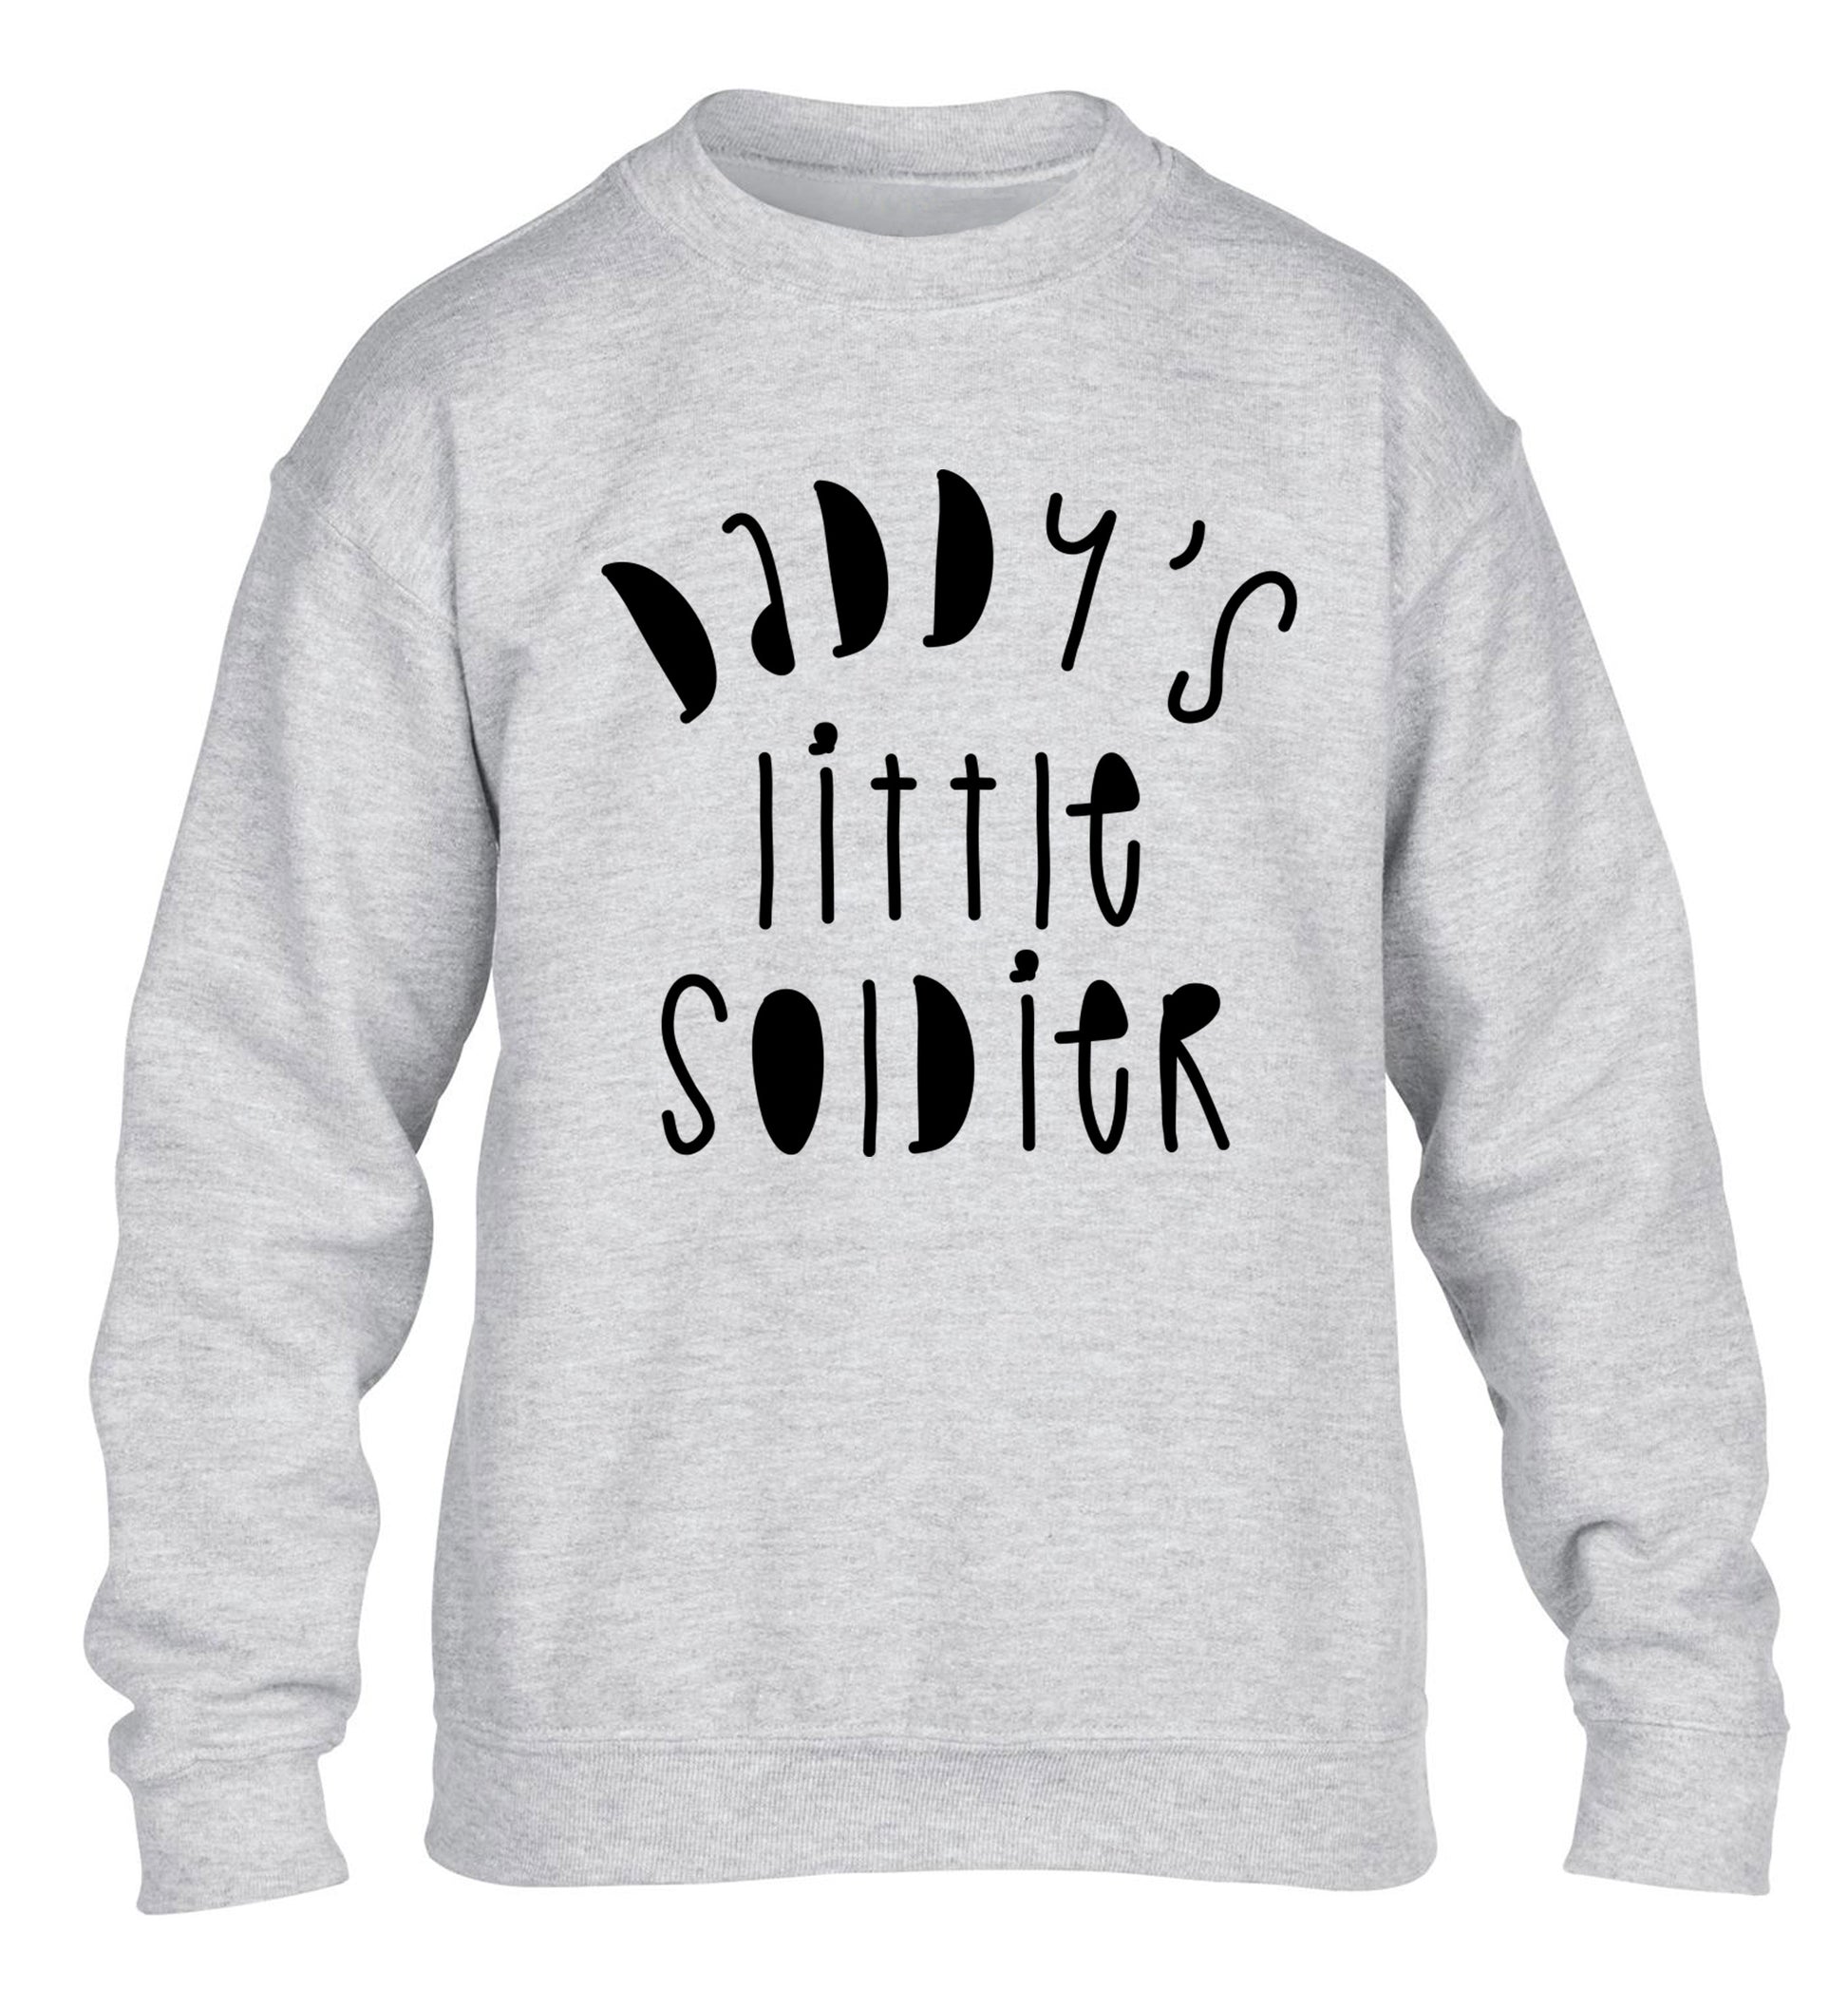 Daddy's little soldier children's grey sweater 12-14 Years